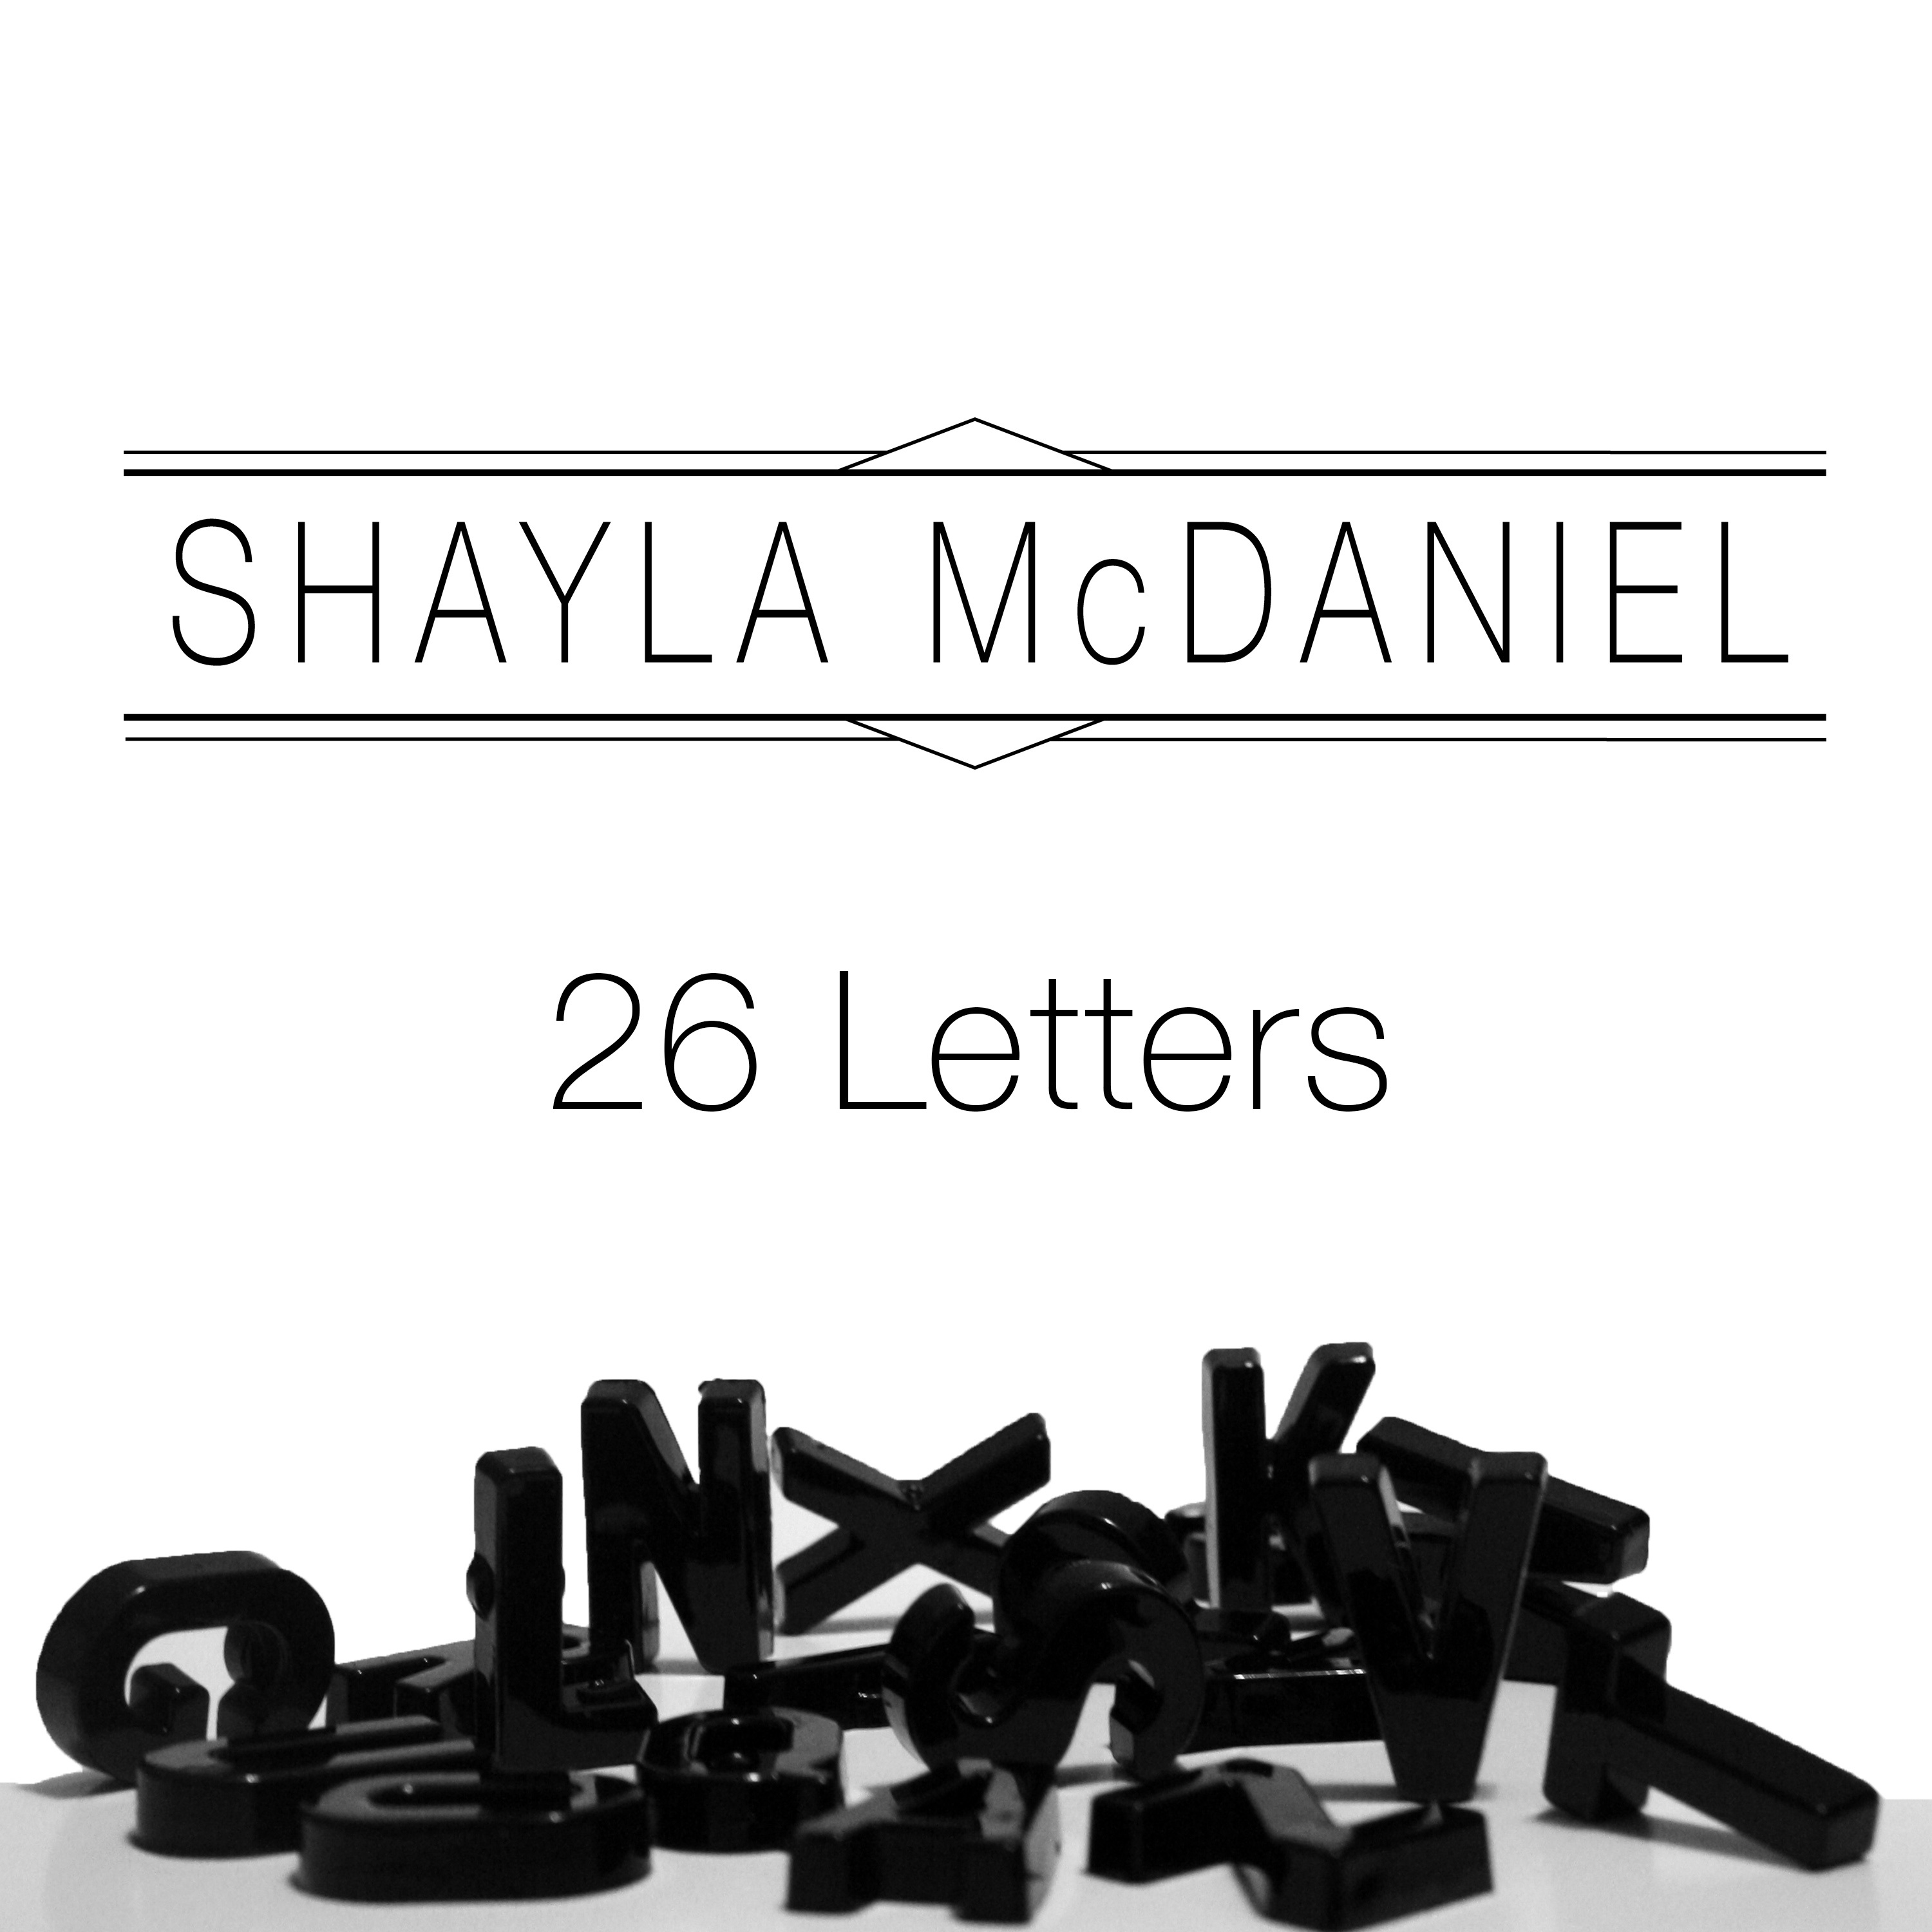 Shayla McDaniel – “Losing You”